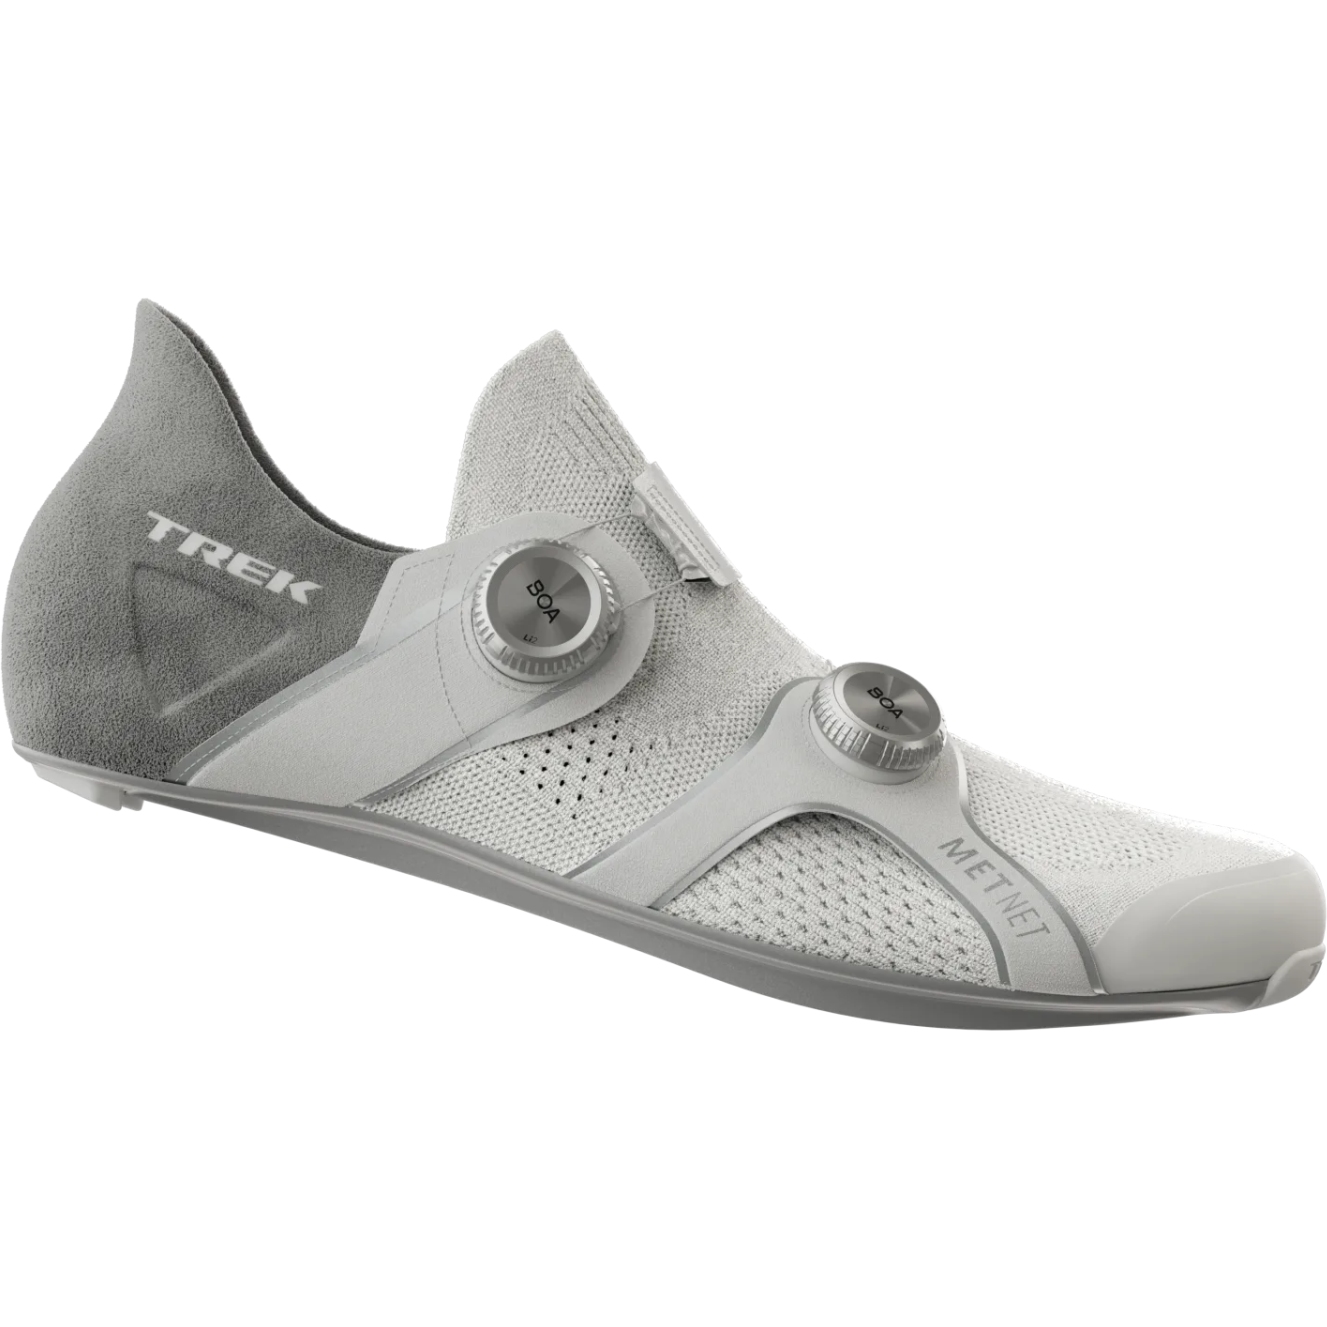 Produktbild von Trek RSL Knit Rennradschuhe - Weiß/Silber